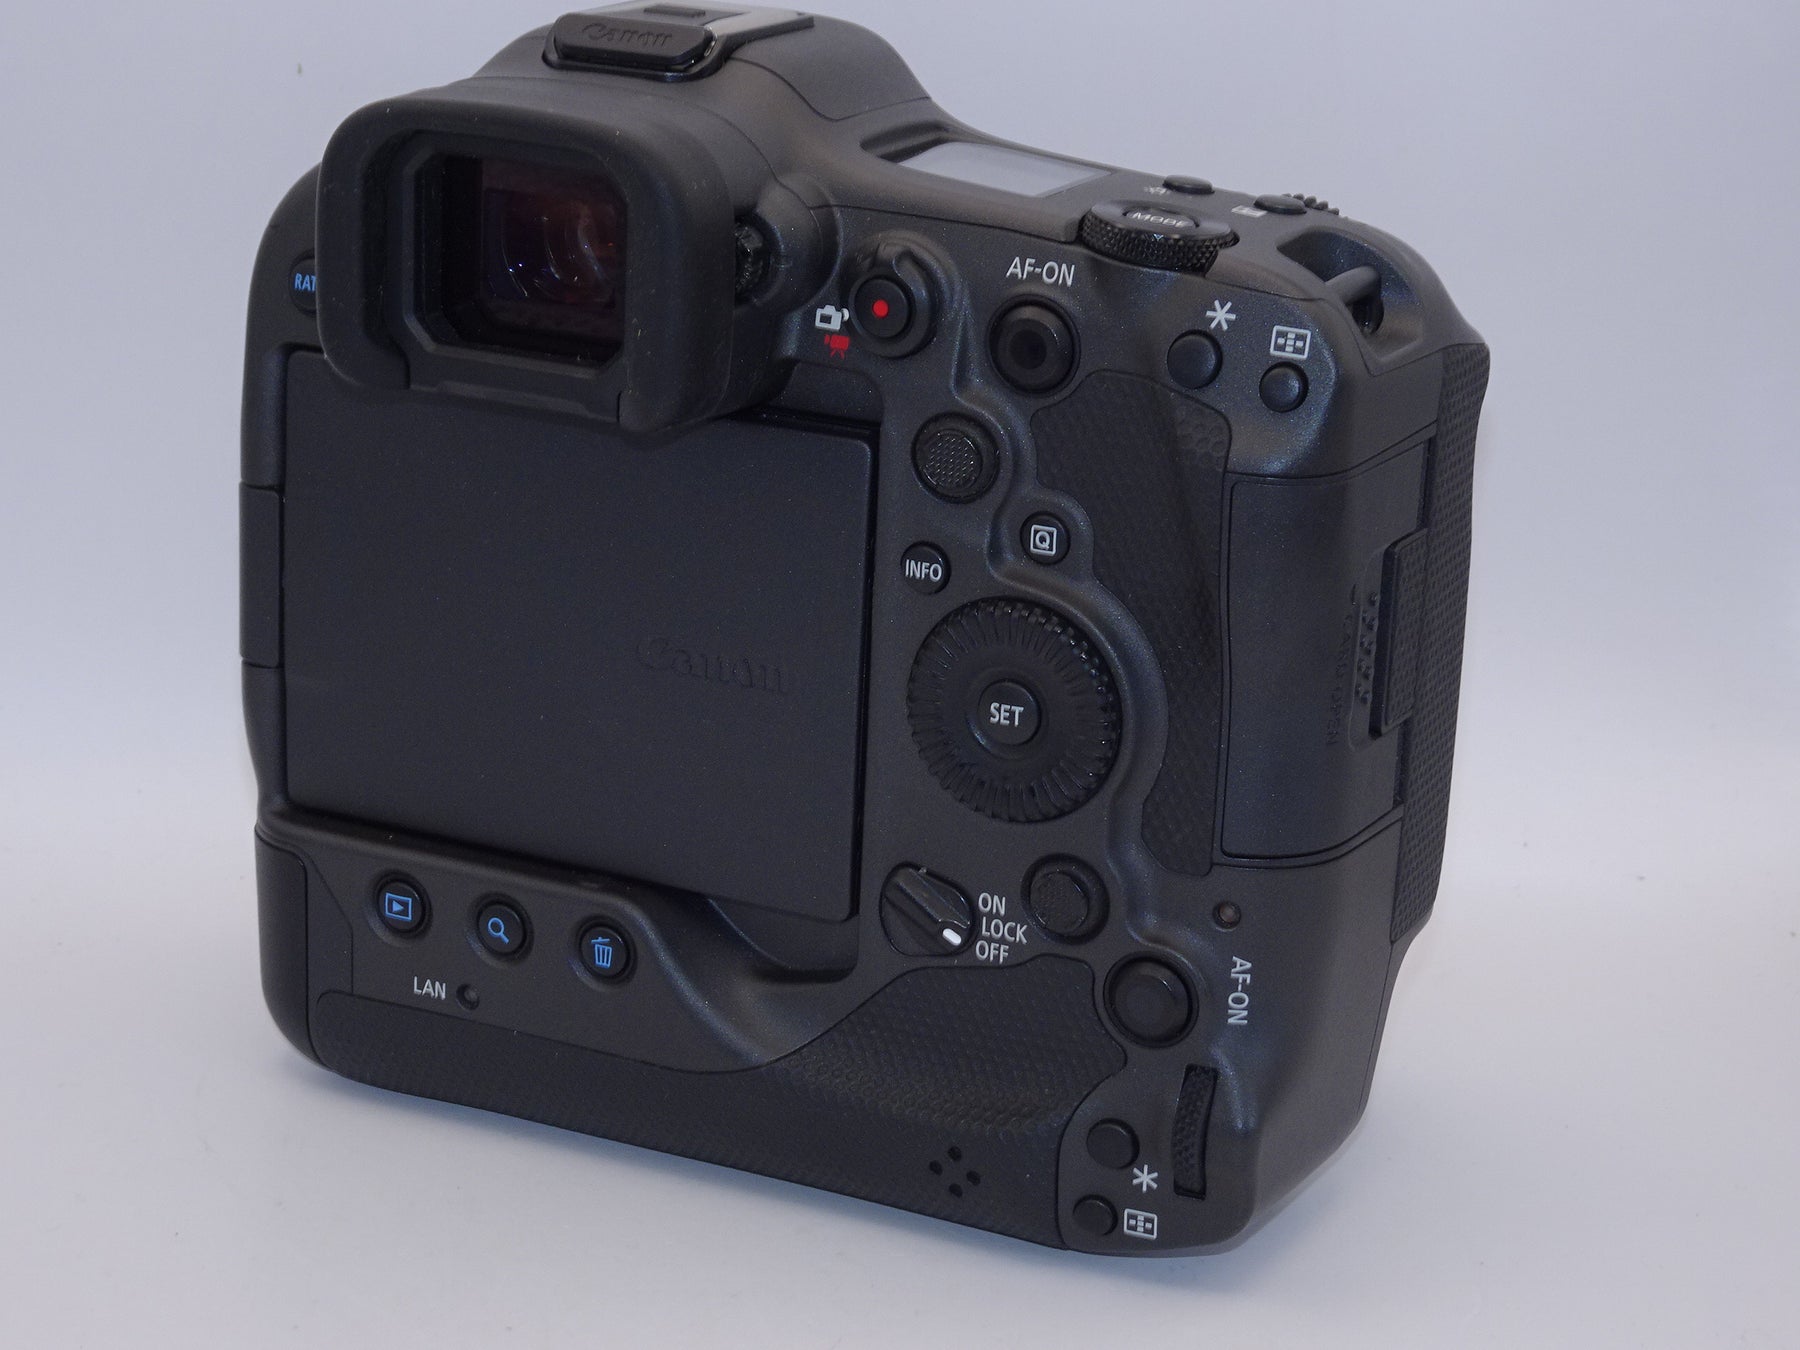 【外観特上級】Canon (キャノン) EOS R3 カメラボディ